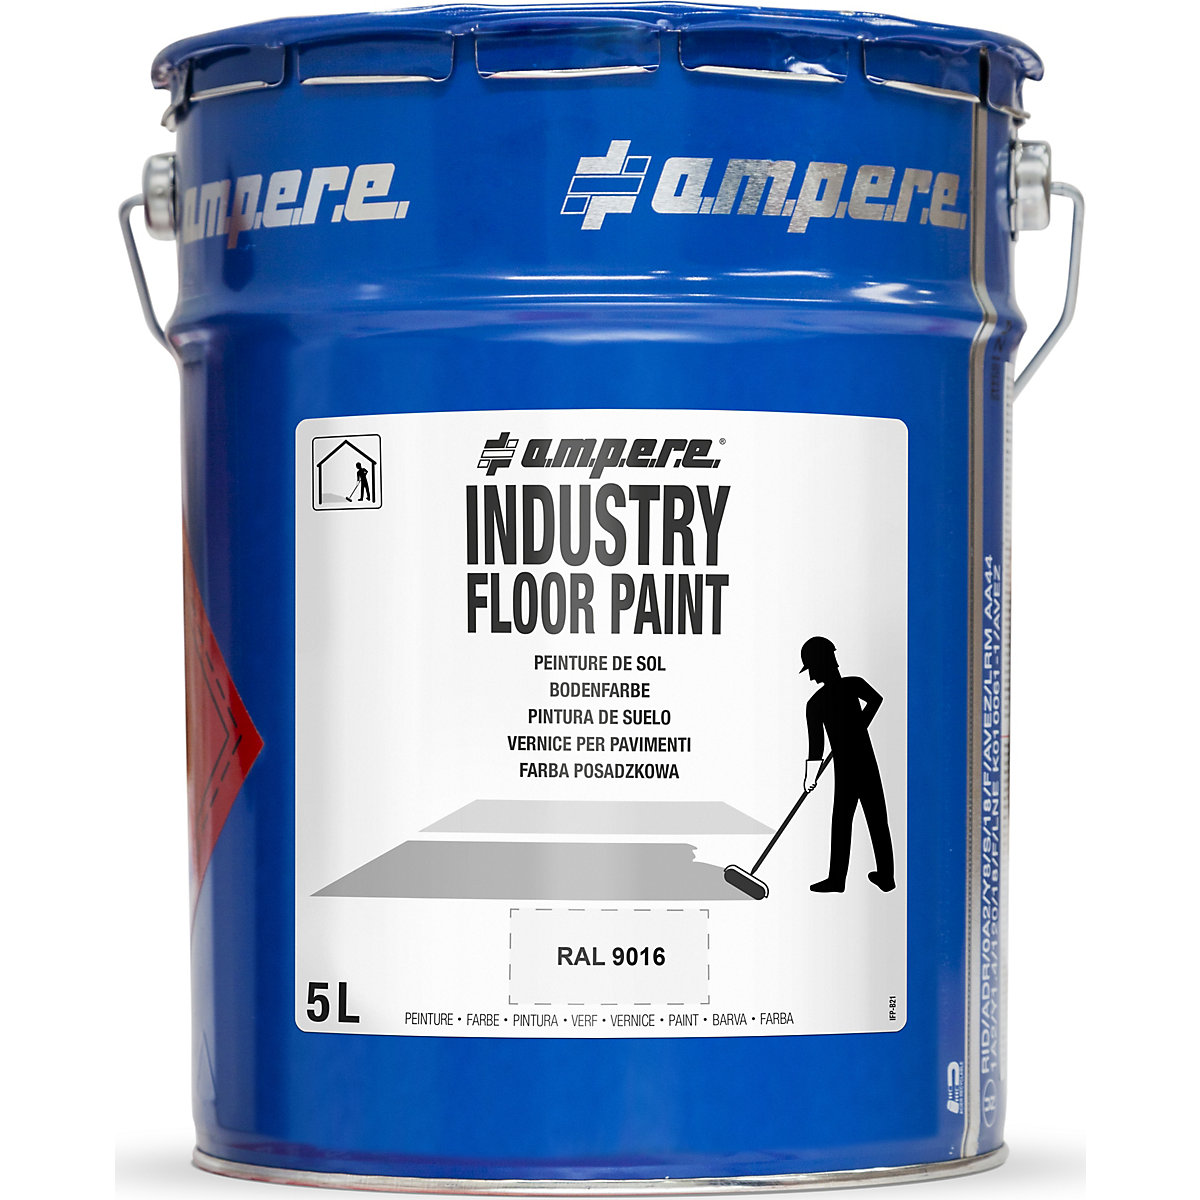 Barva za označevanje tal Industry Floor Paint® – Ampere